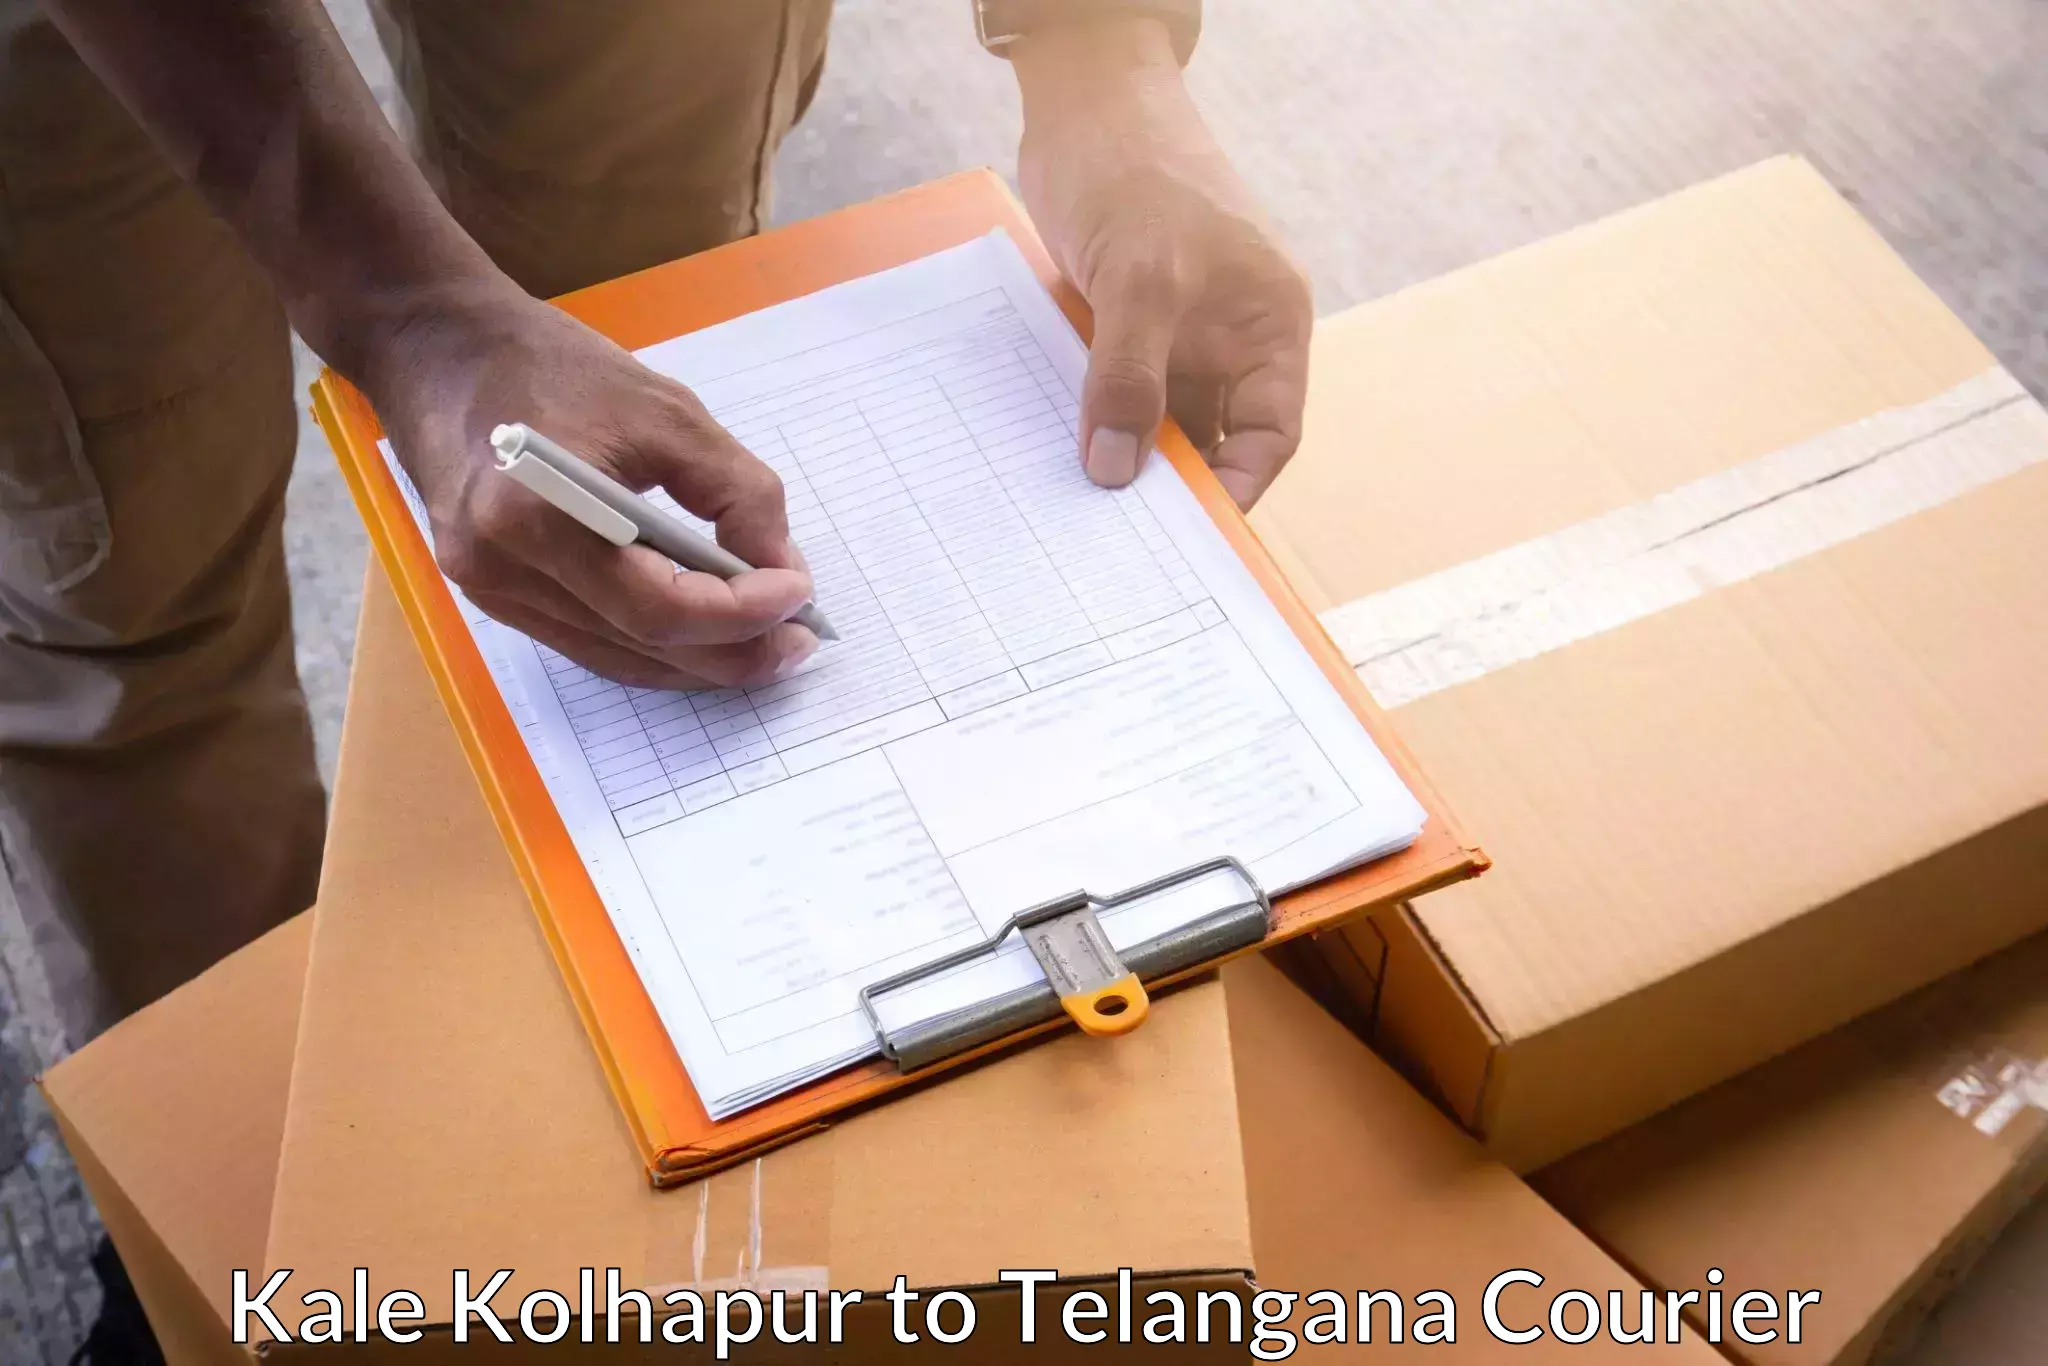 Express mail service Kale Kolhapur to Tadoor